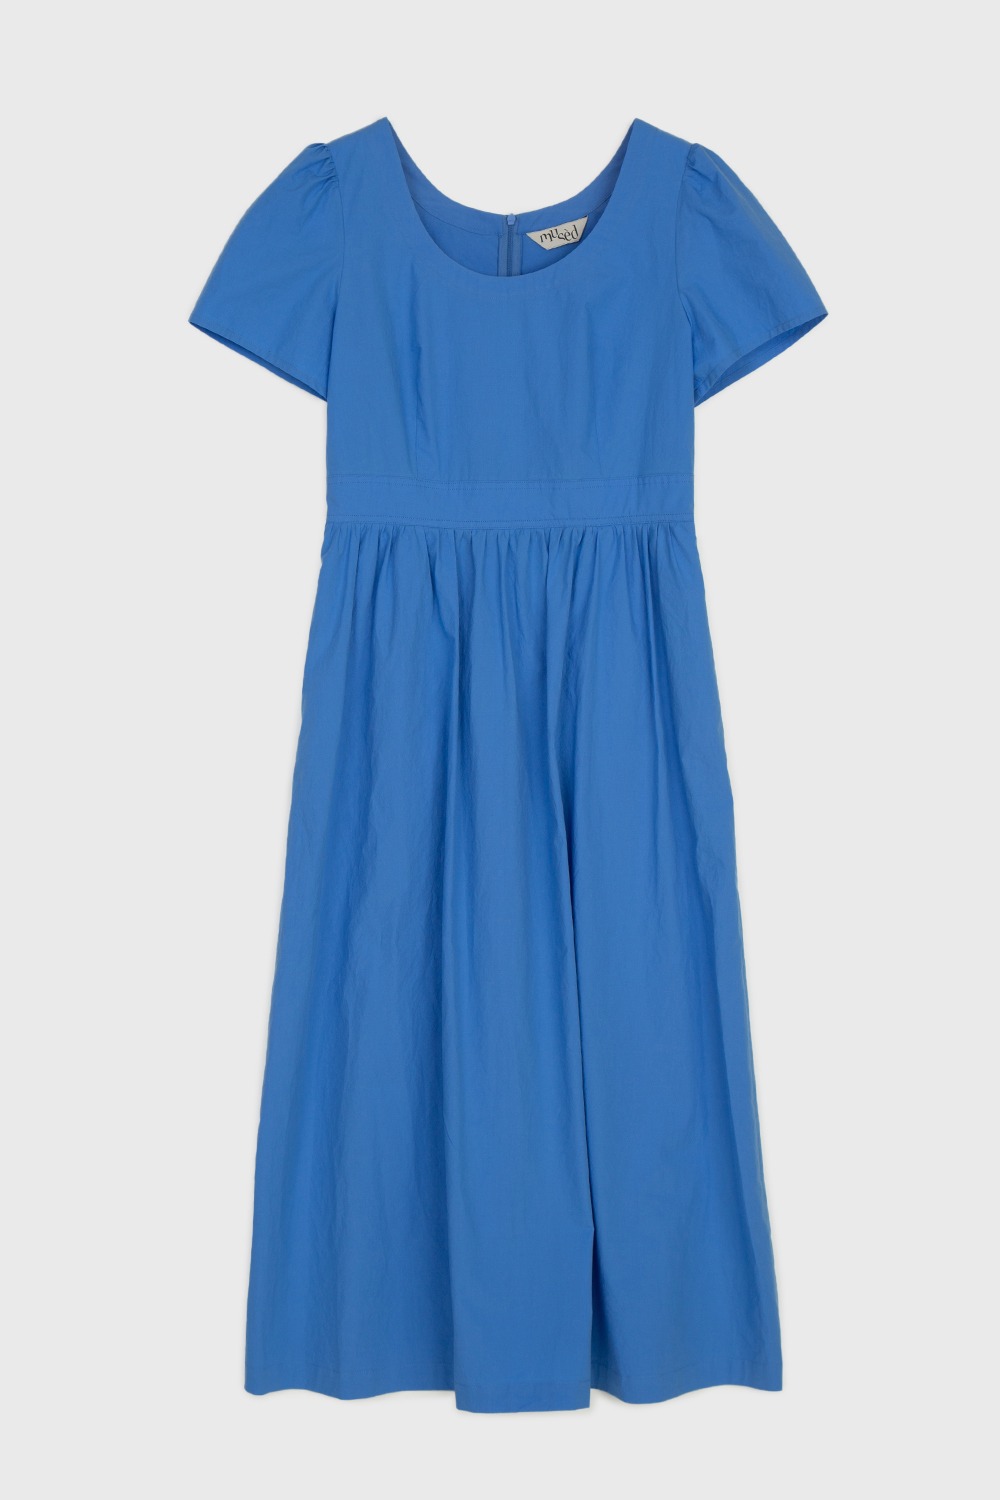 TROPEZ DRESS - BLUE